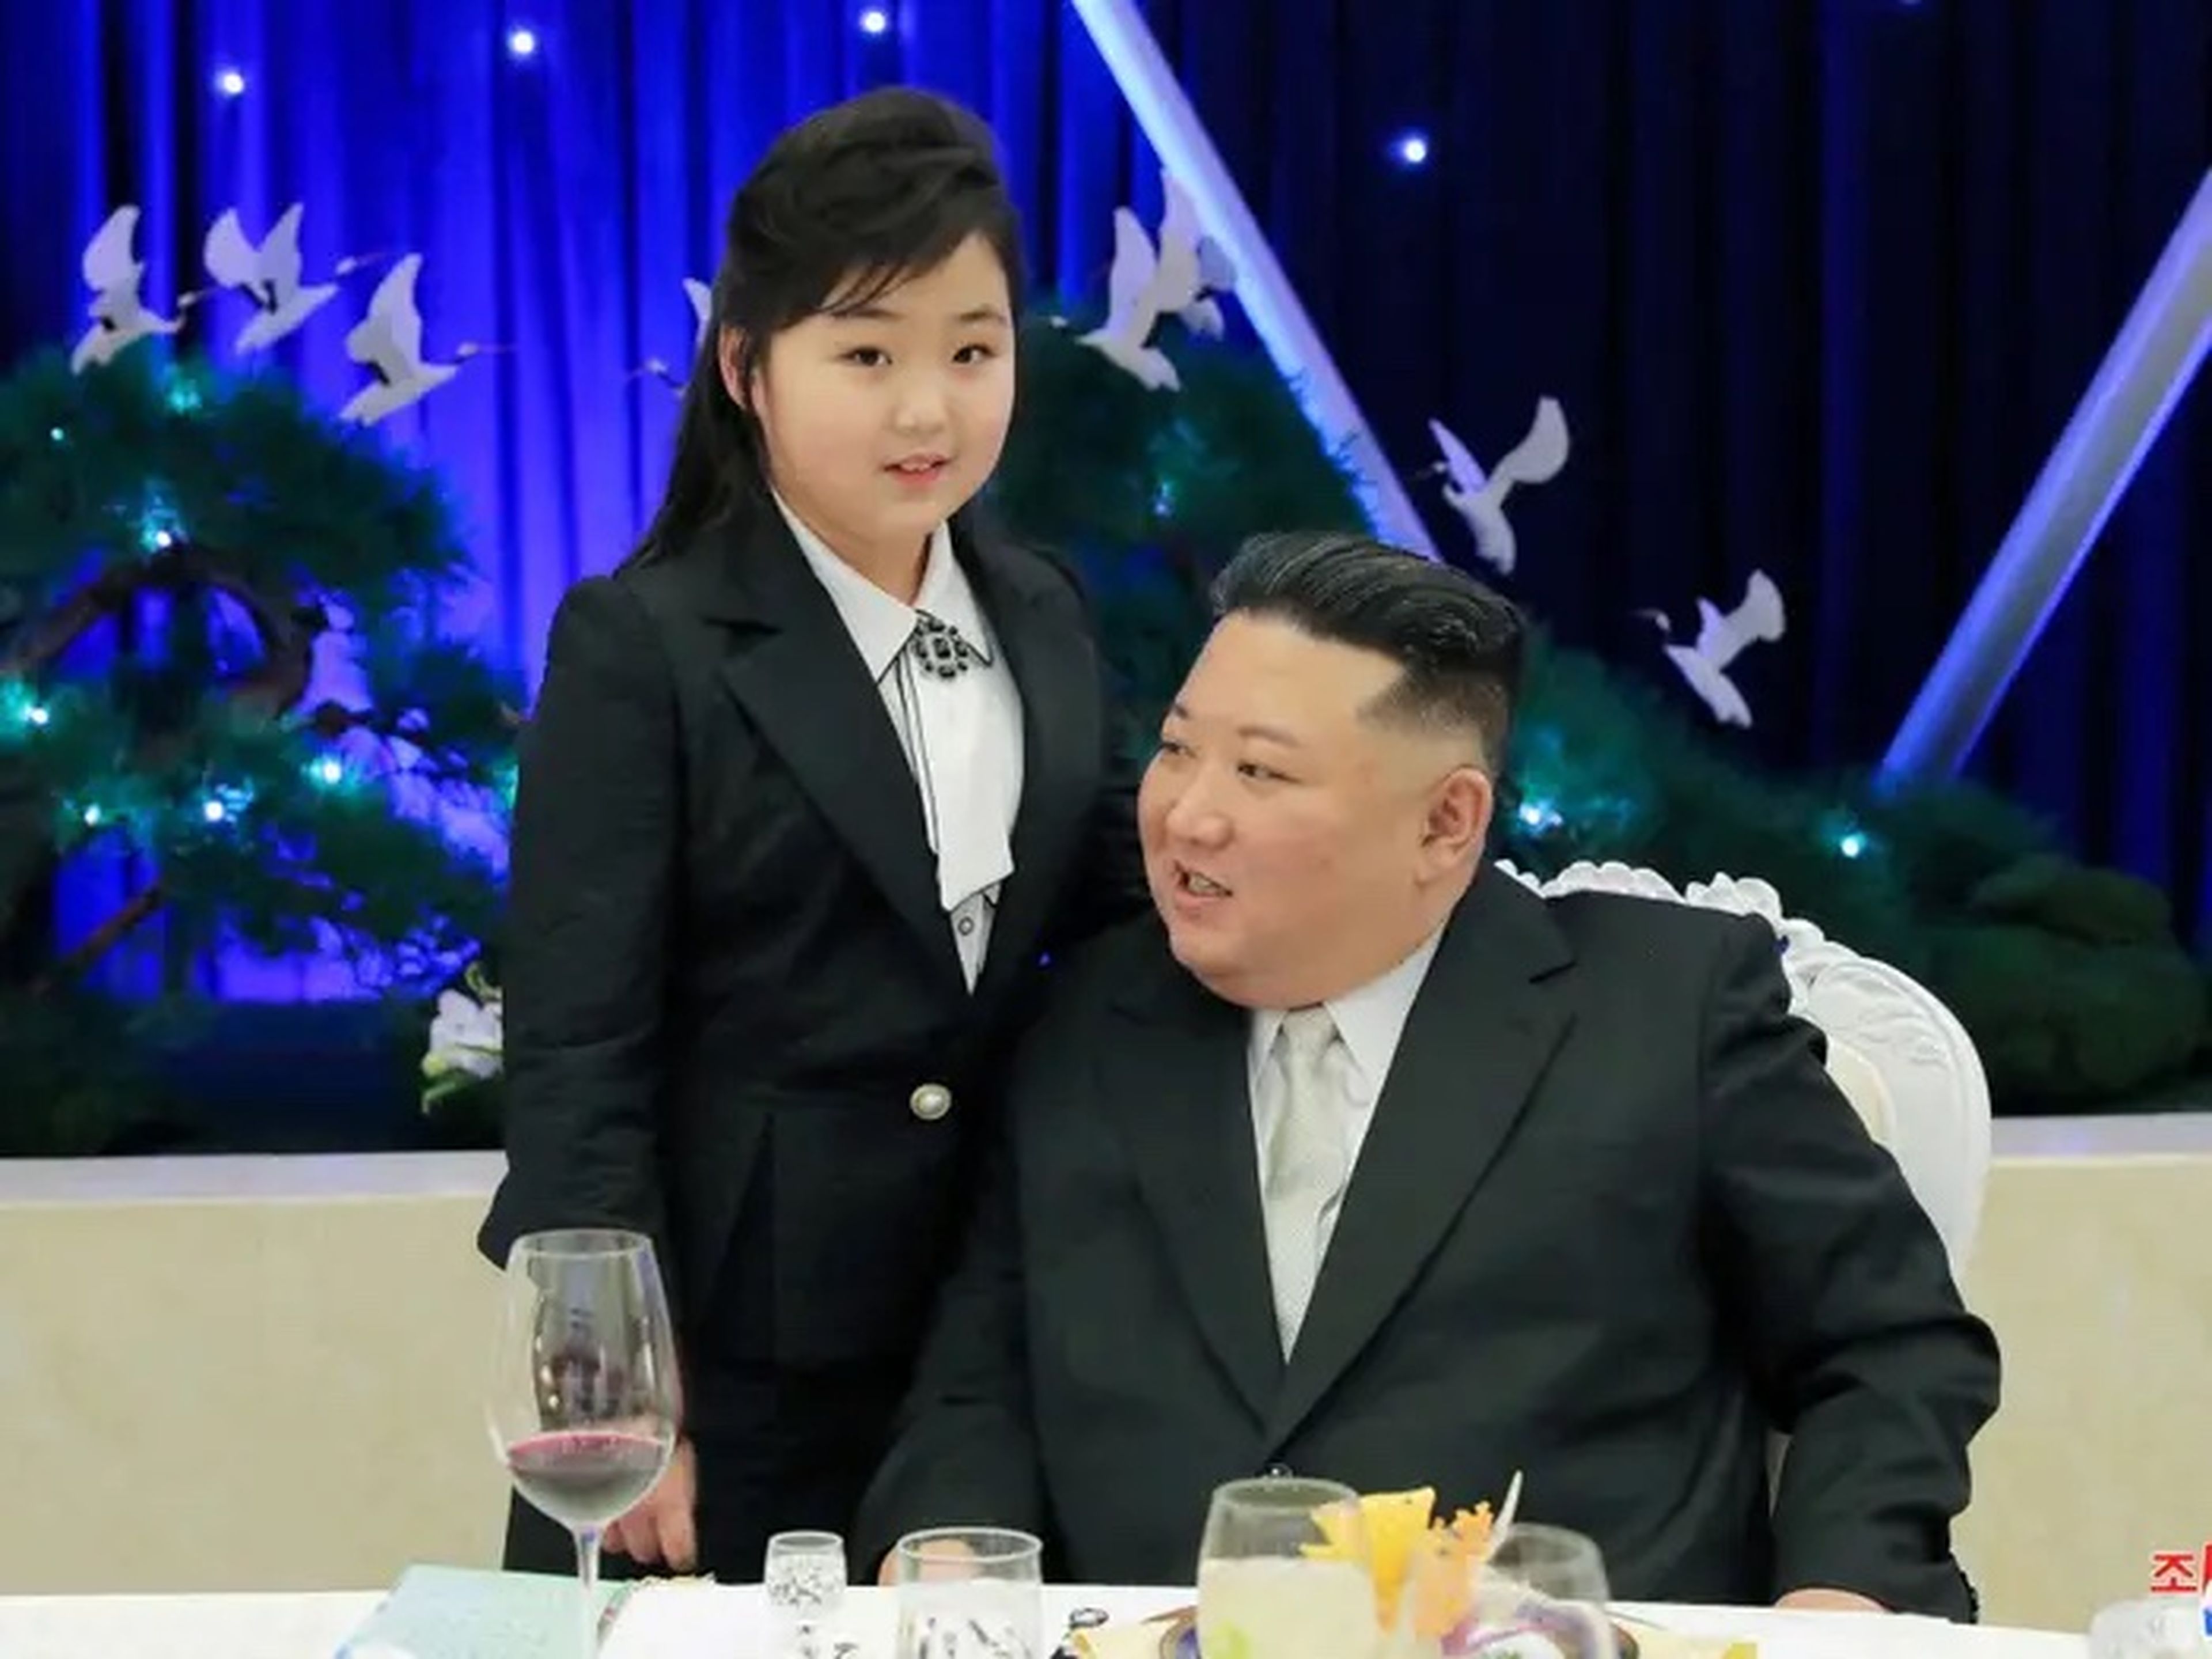 Kim Jong Un habla con su hija Kim Ju Ae en un banquete para celebrar el 75 aniversario del Ejército Popular de Corea.